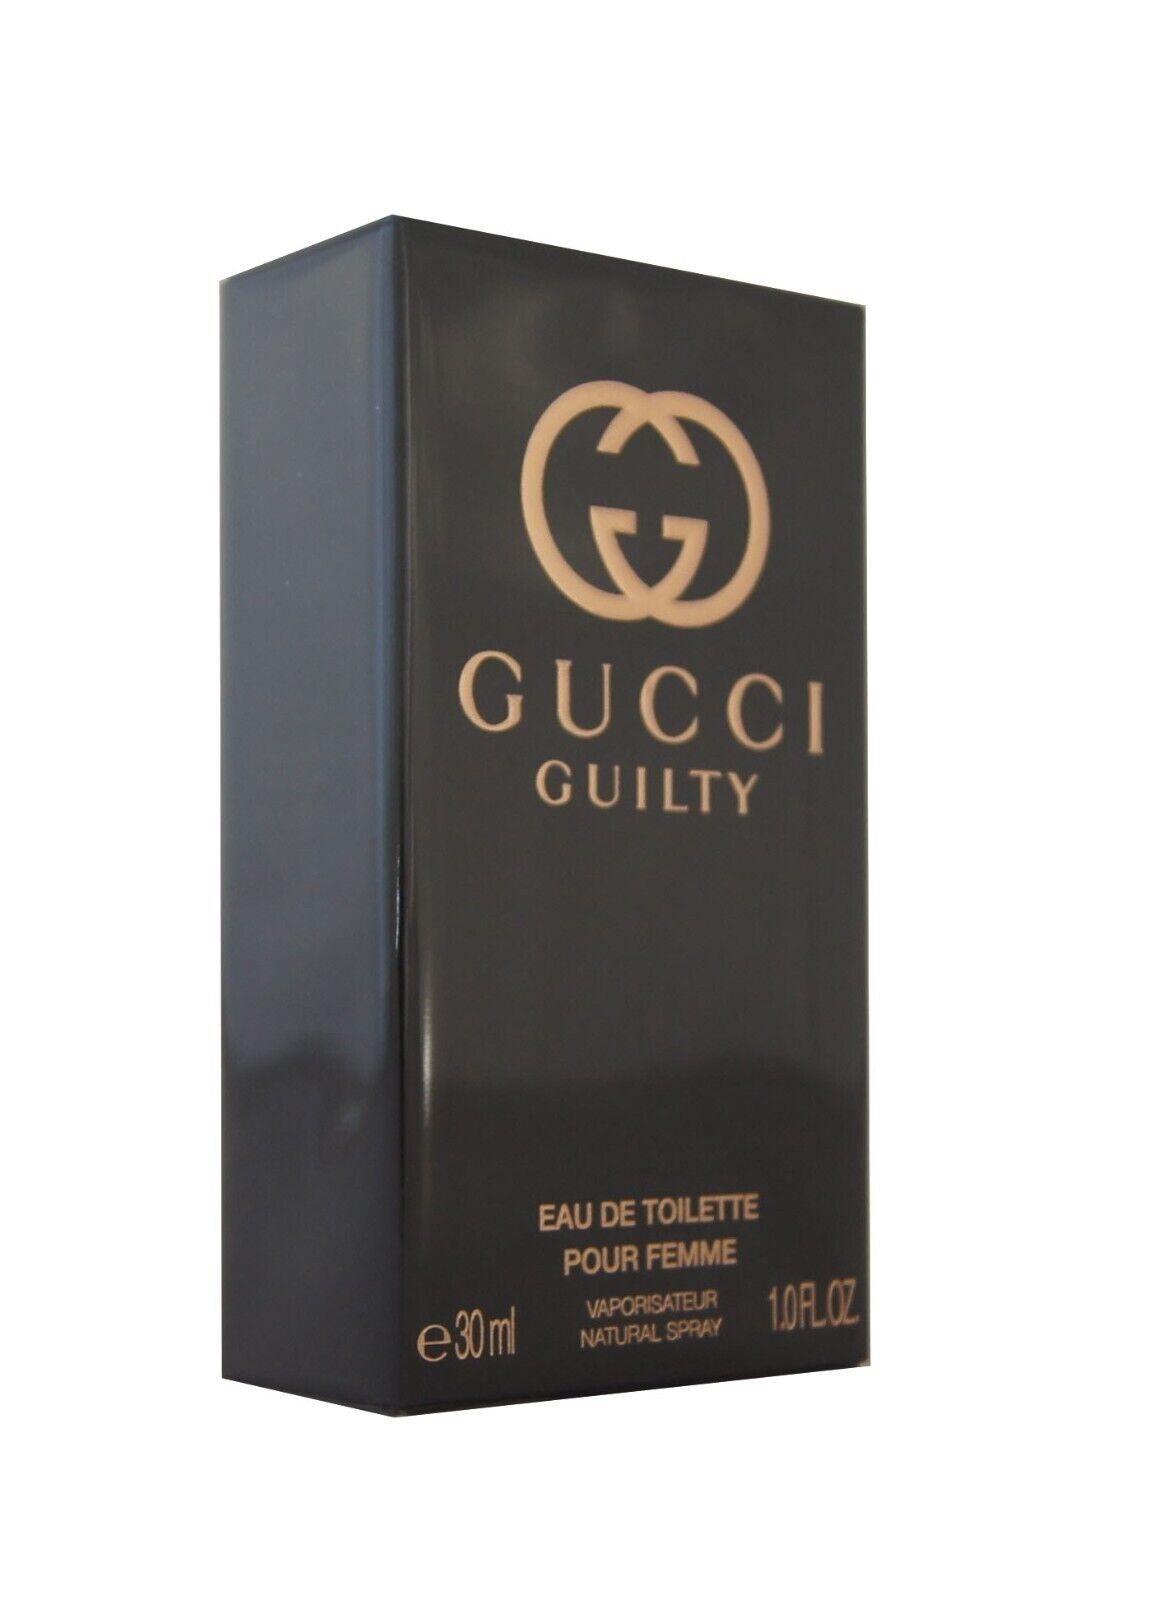 GUCCI Eau de Toilette Gucci Guilty Pour Femme Eau de Toilette edt 30ml.